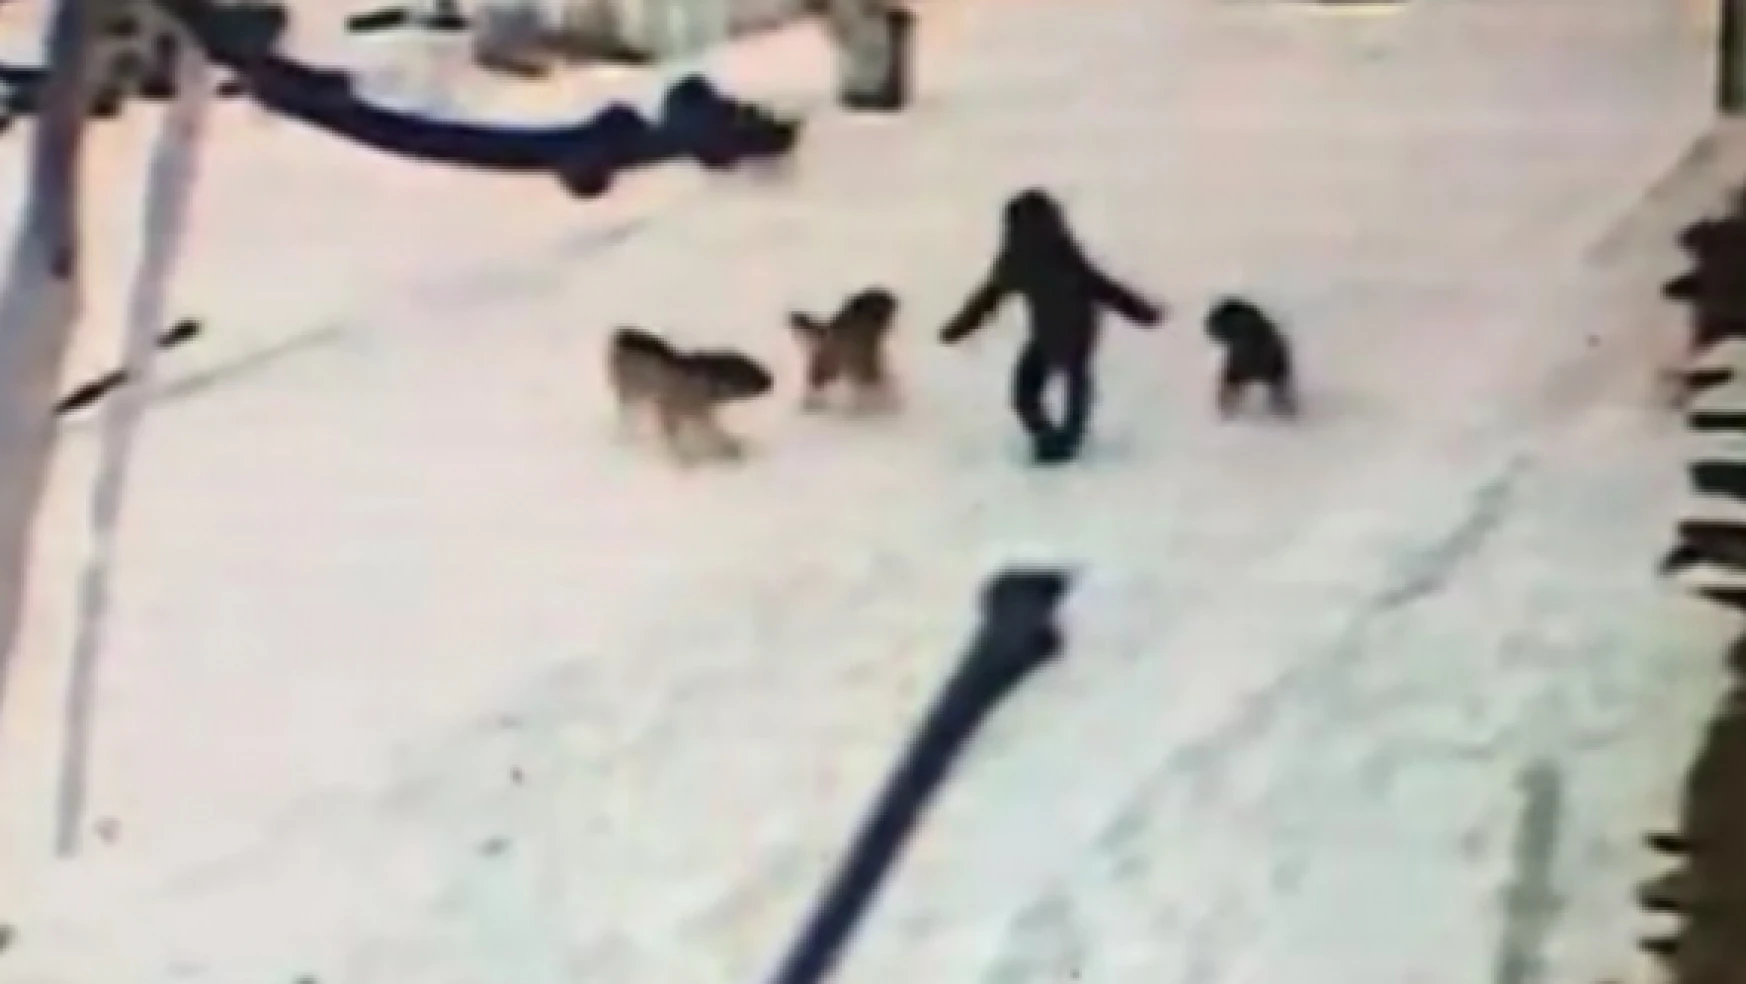 Kars'ta başıboş köpekler bir çocuğa saldırdı!